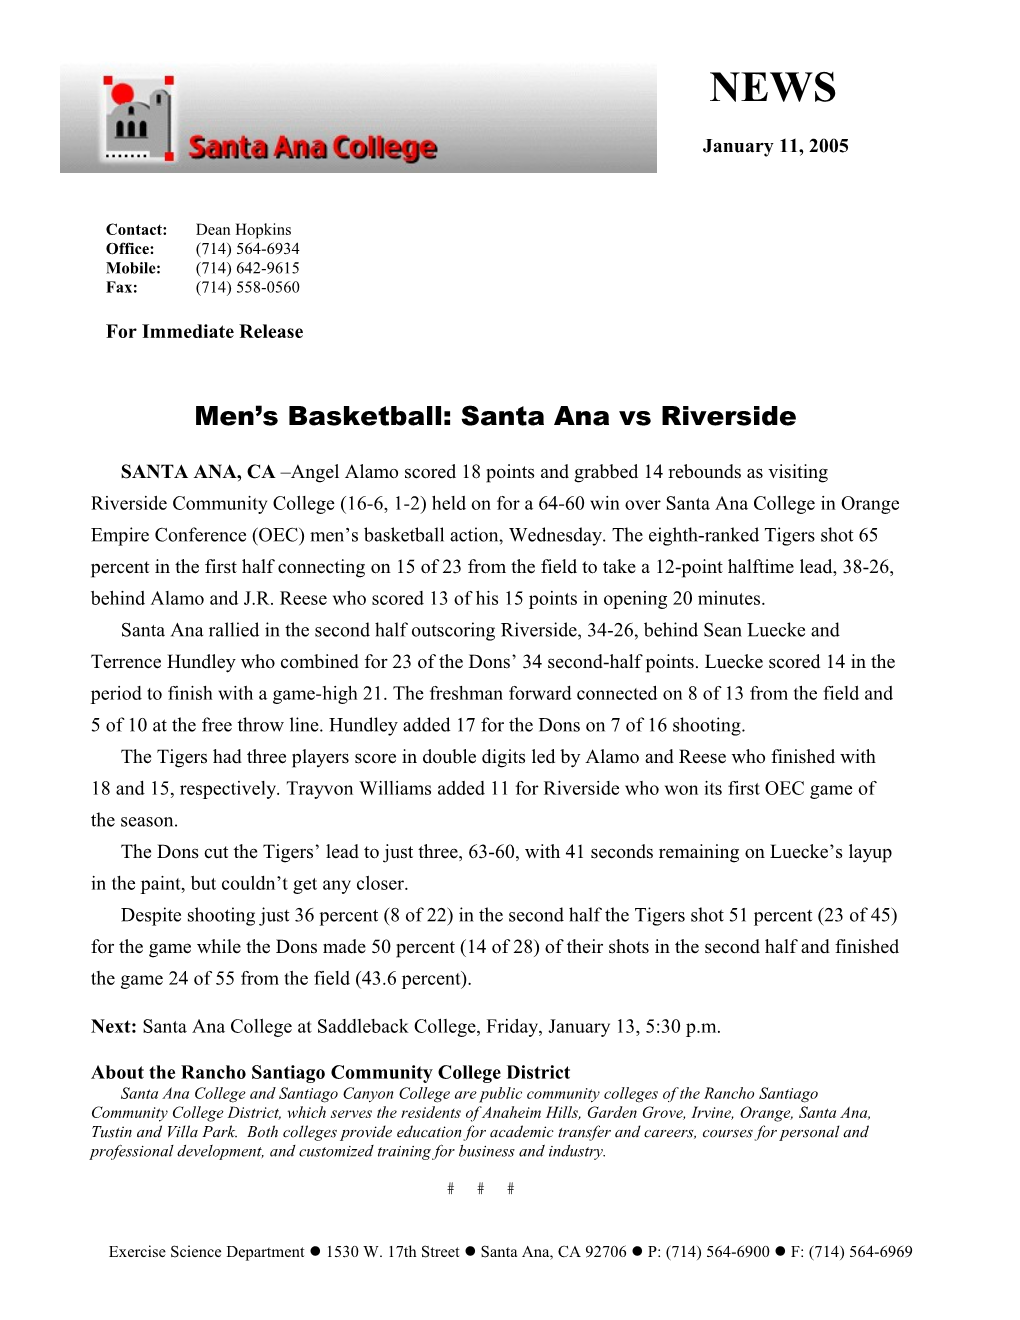 Men S Basketball: Santa Ana Vs Riverside